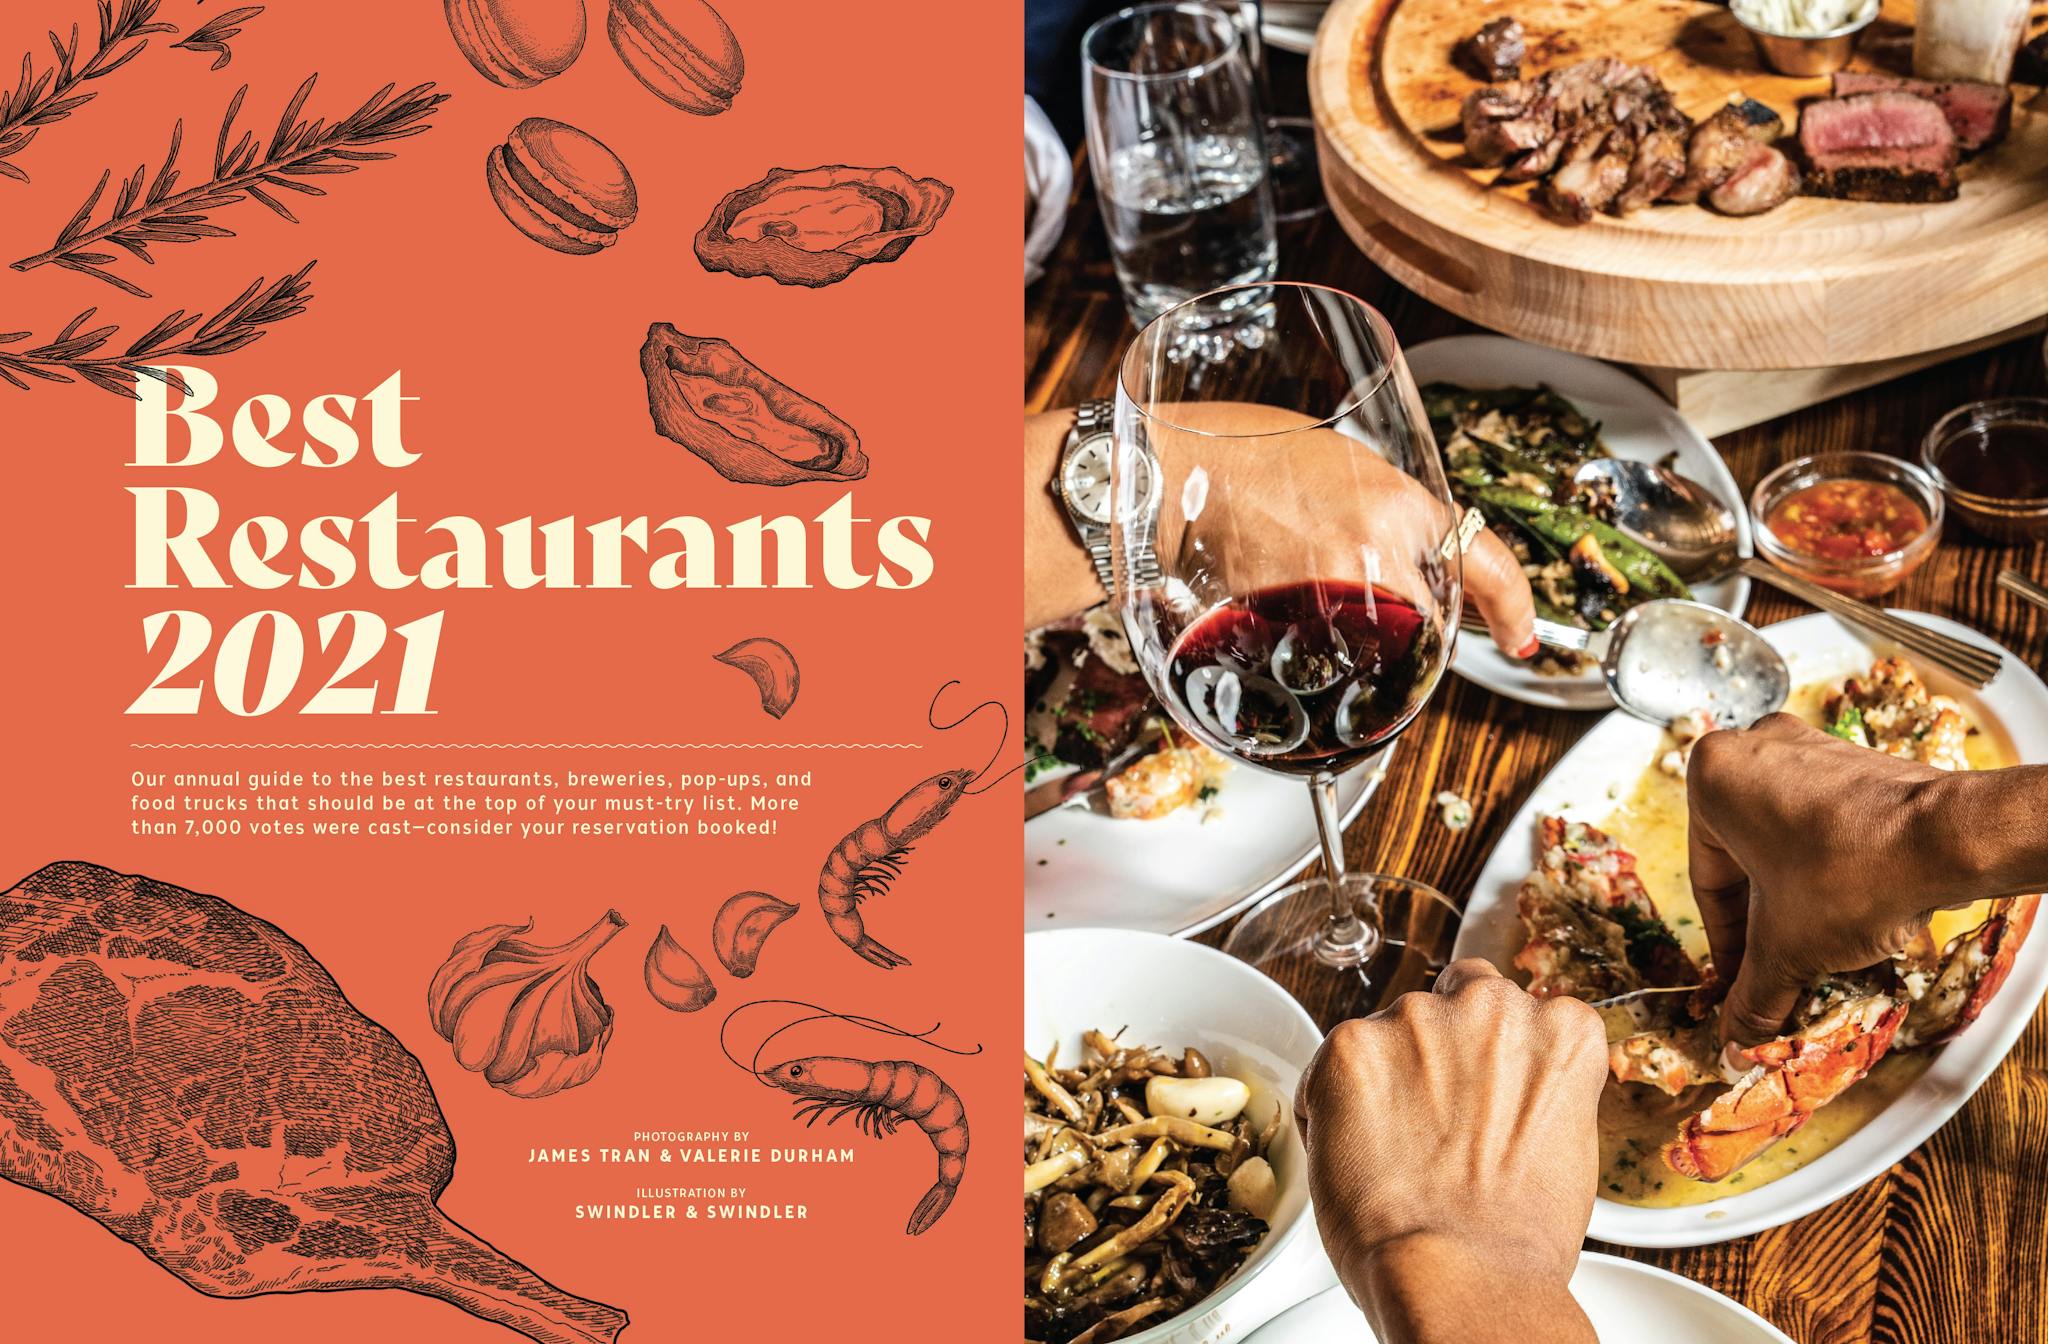 Couverture illustrée du journal San Diego Magazine sur les meilleurs restaurants en 2021.